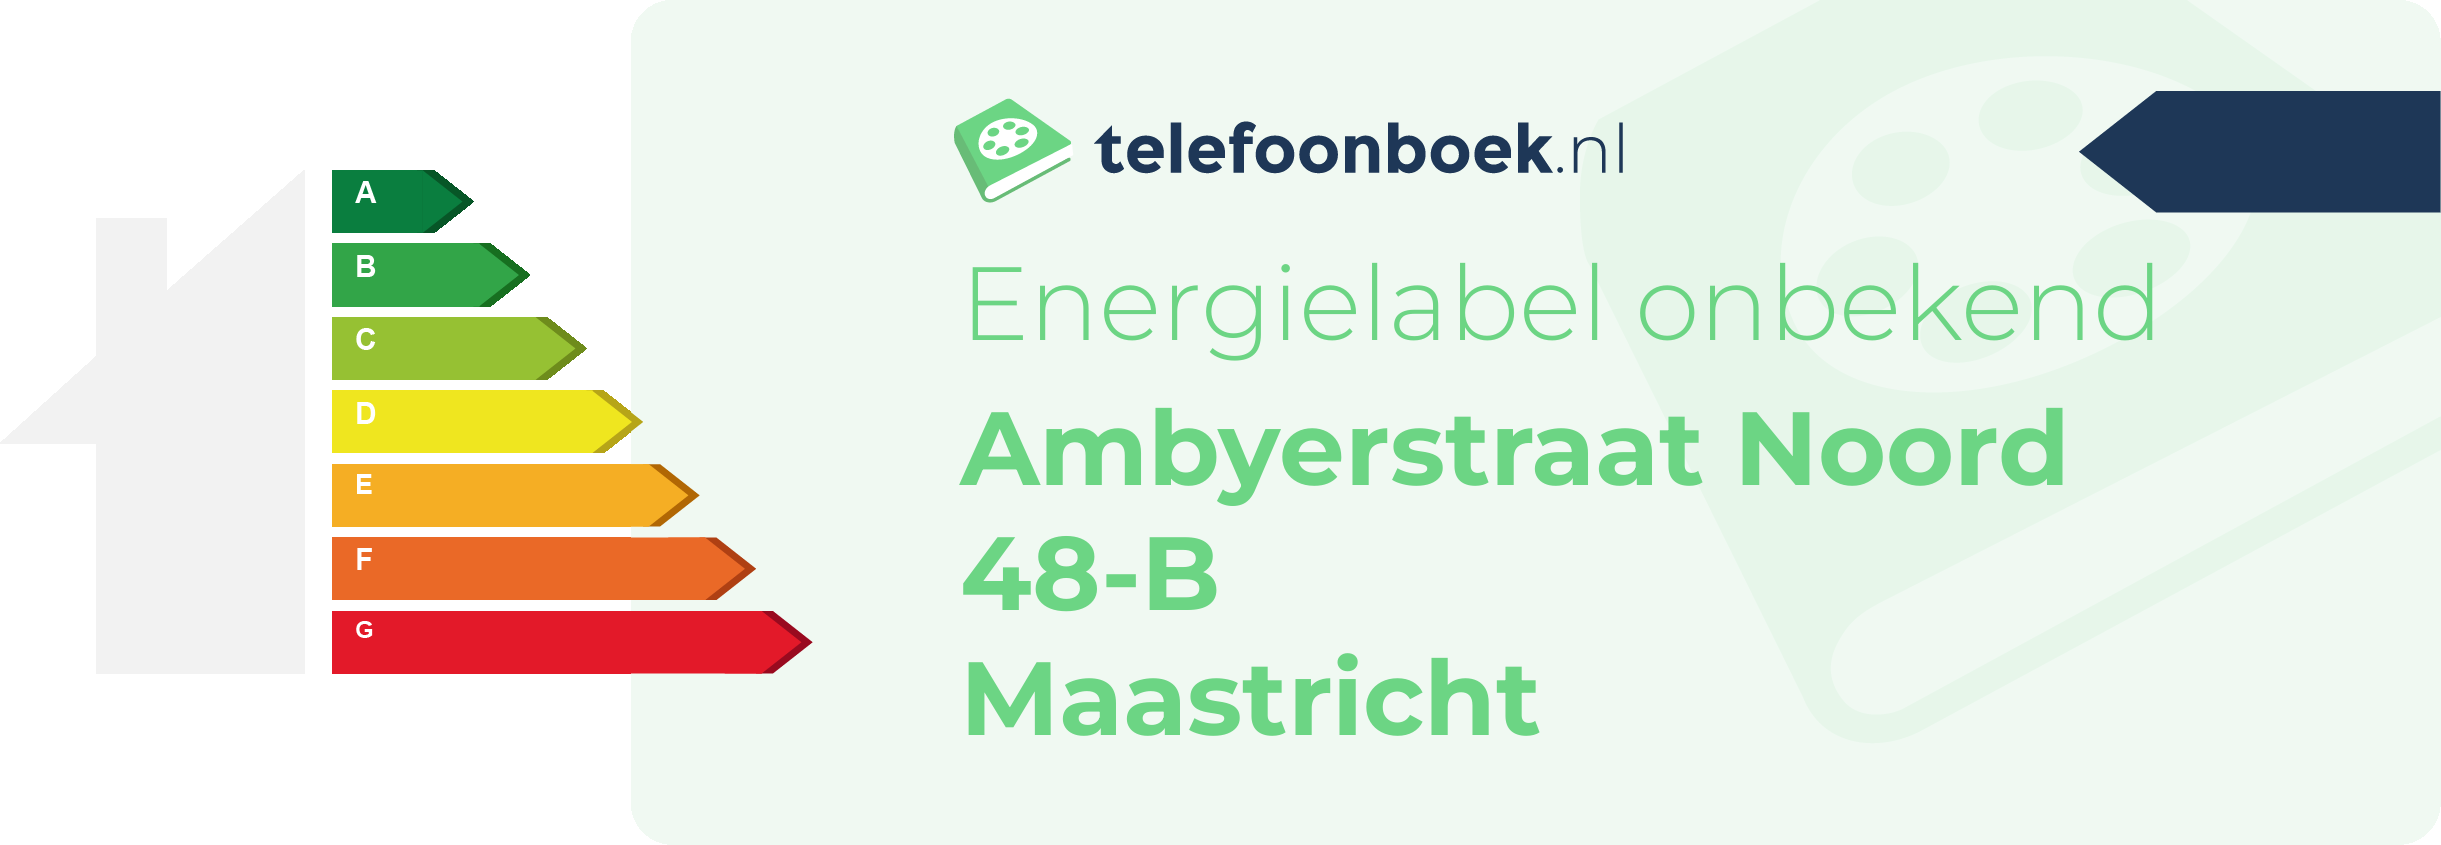 Energielabel Ambyerstraat Noord 48-B Maastricht